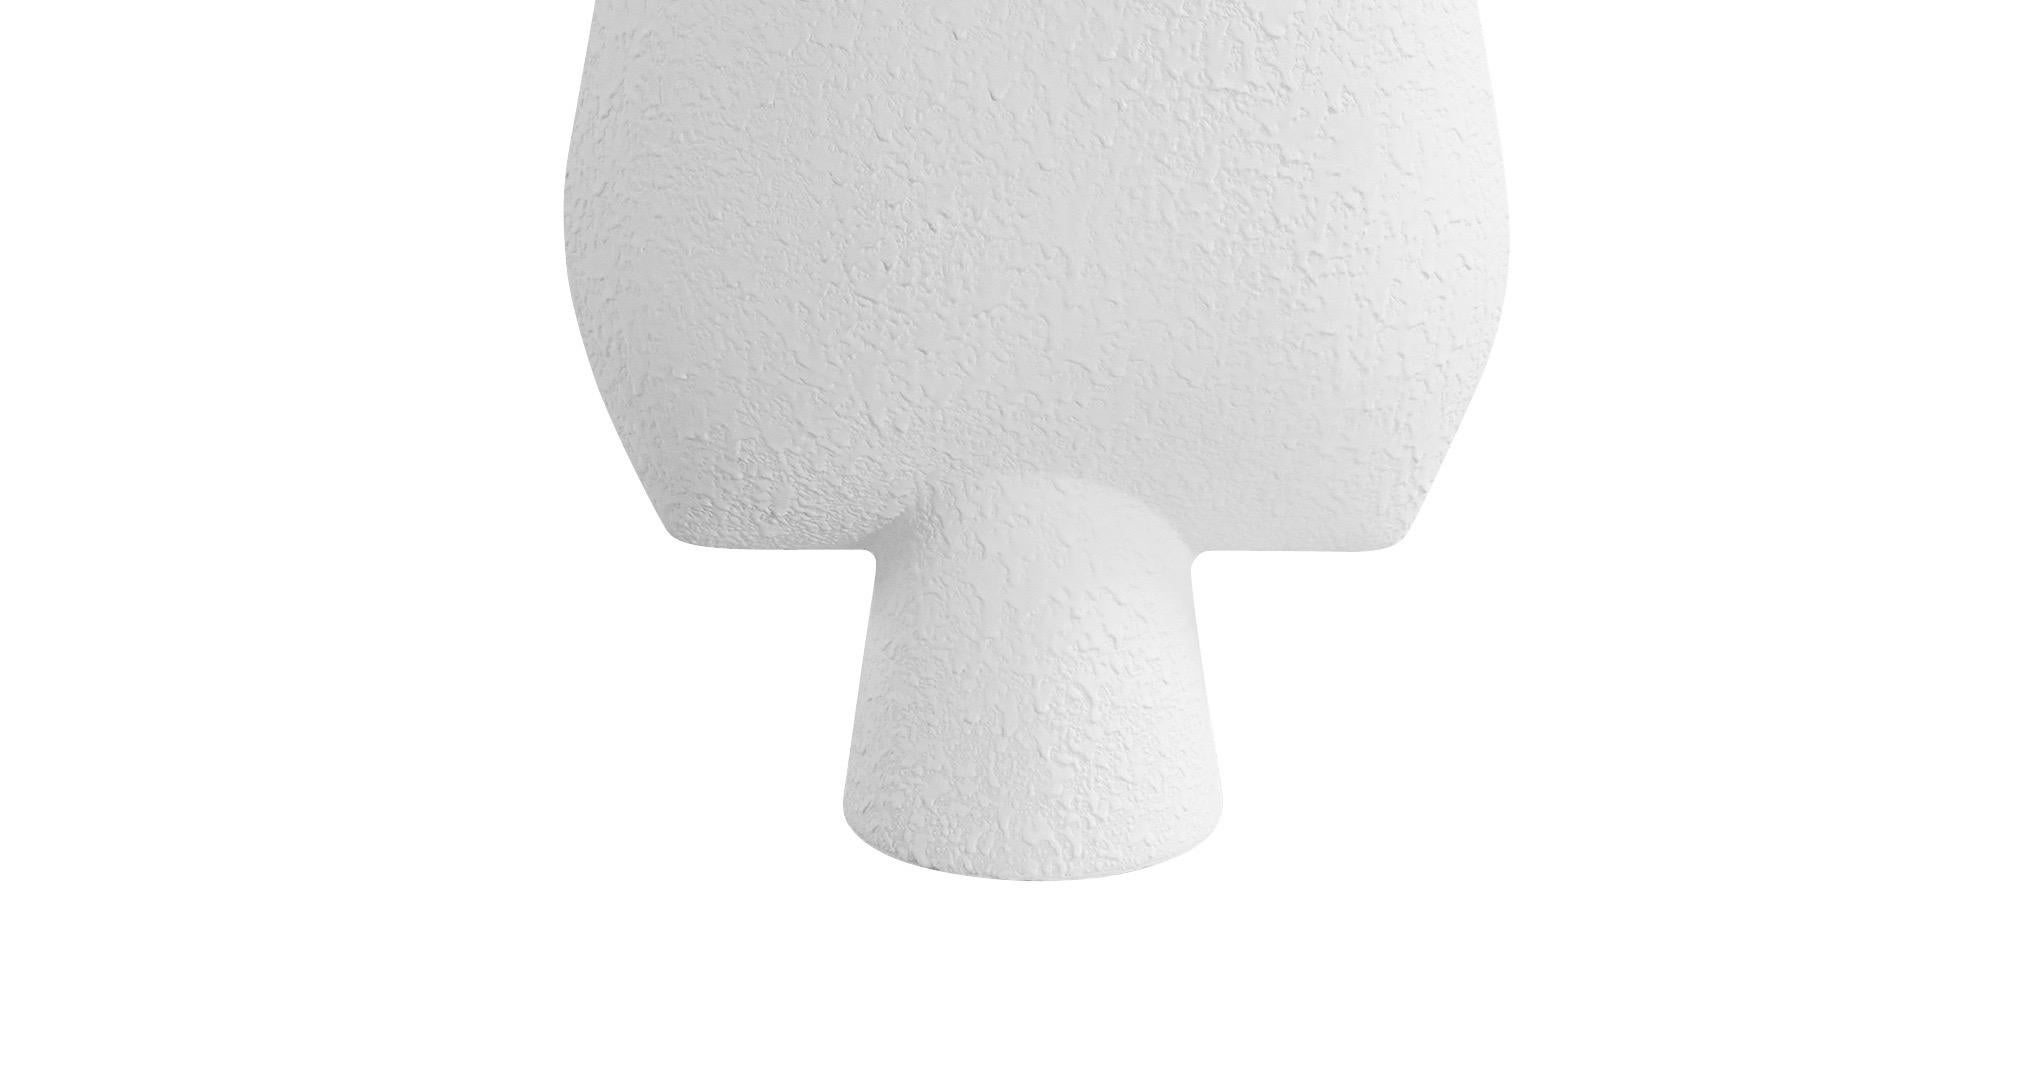 Grand vase danois contemporain en céramique blanche texturée. 
Dessus en forme de flèche et base en forme de tube.
Egalement disponible en gris mat S5606.
Deux disponibles et vendus individuellement.

 